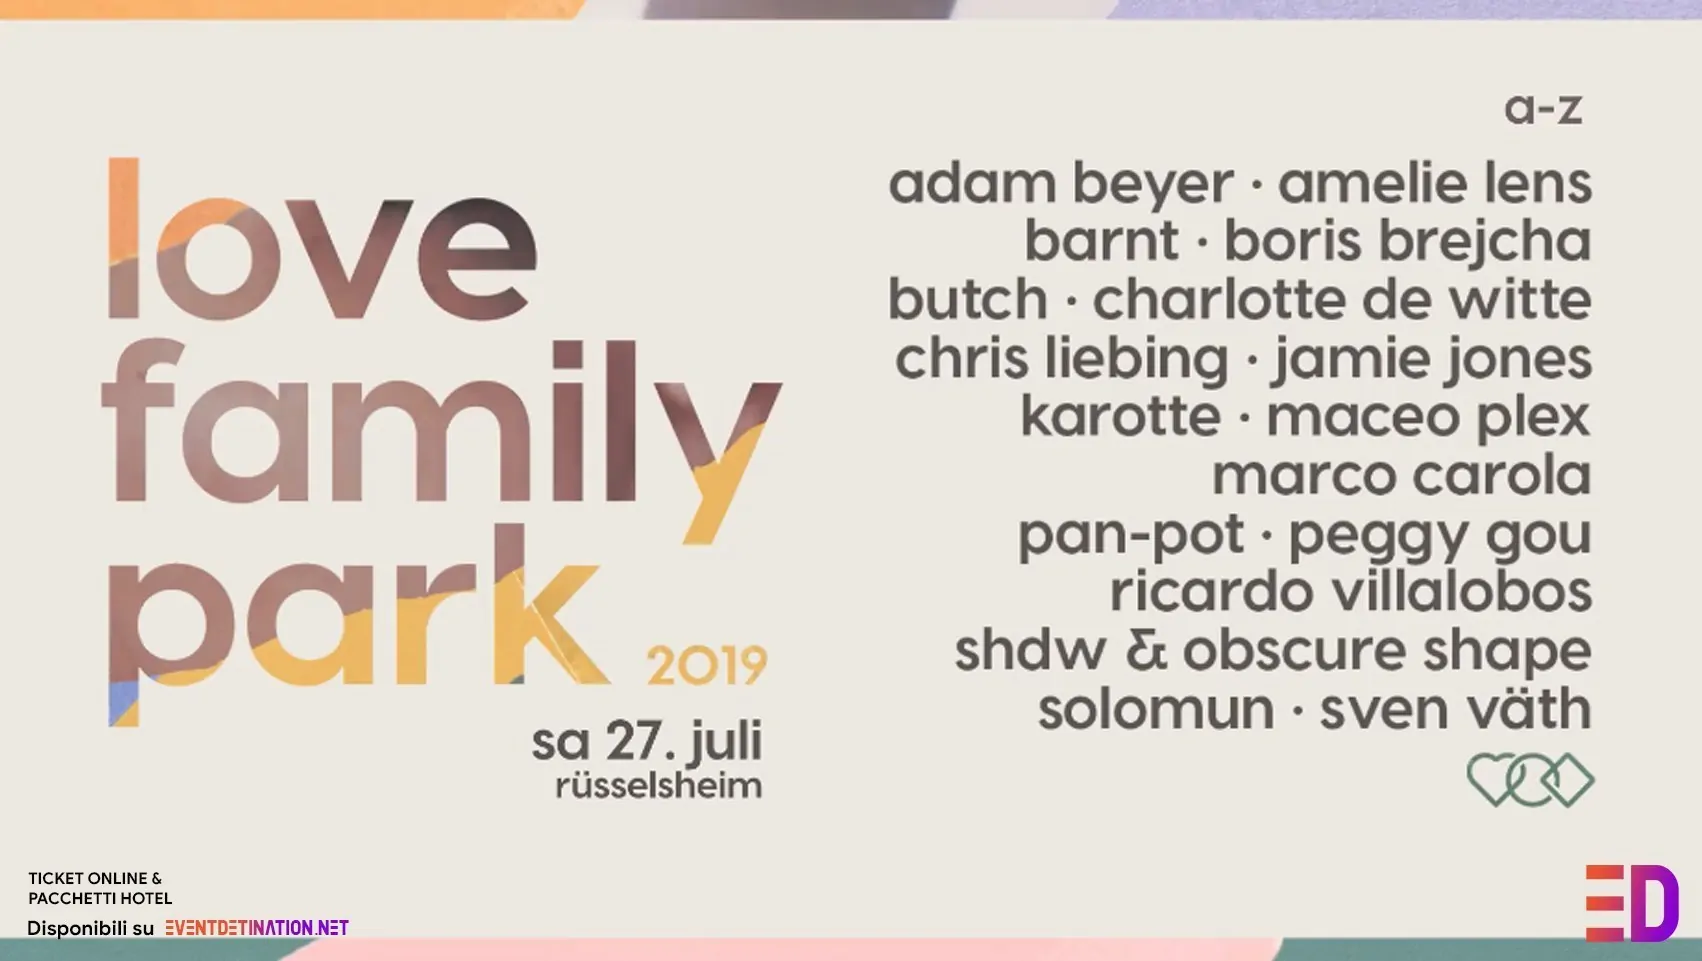 Love Family Park 2019 27 Luglio Ticket Pacchetti Hotel